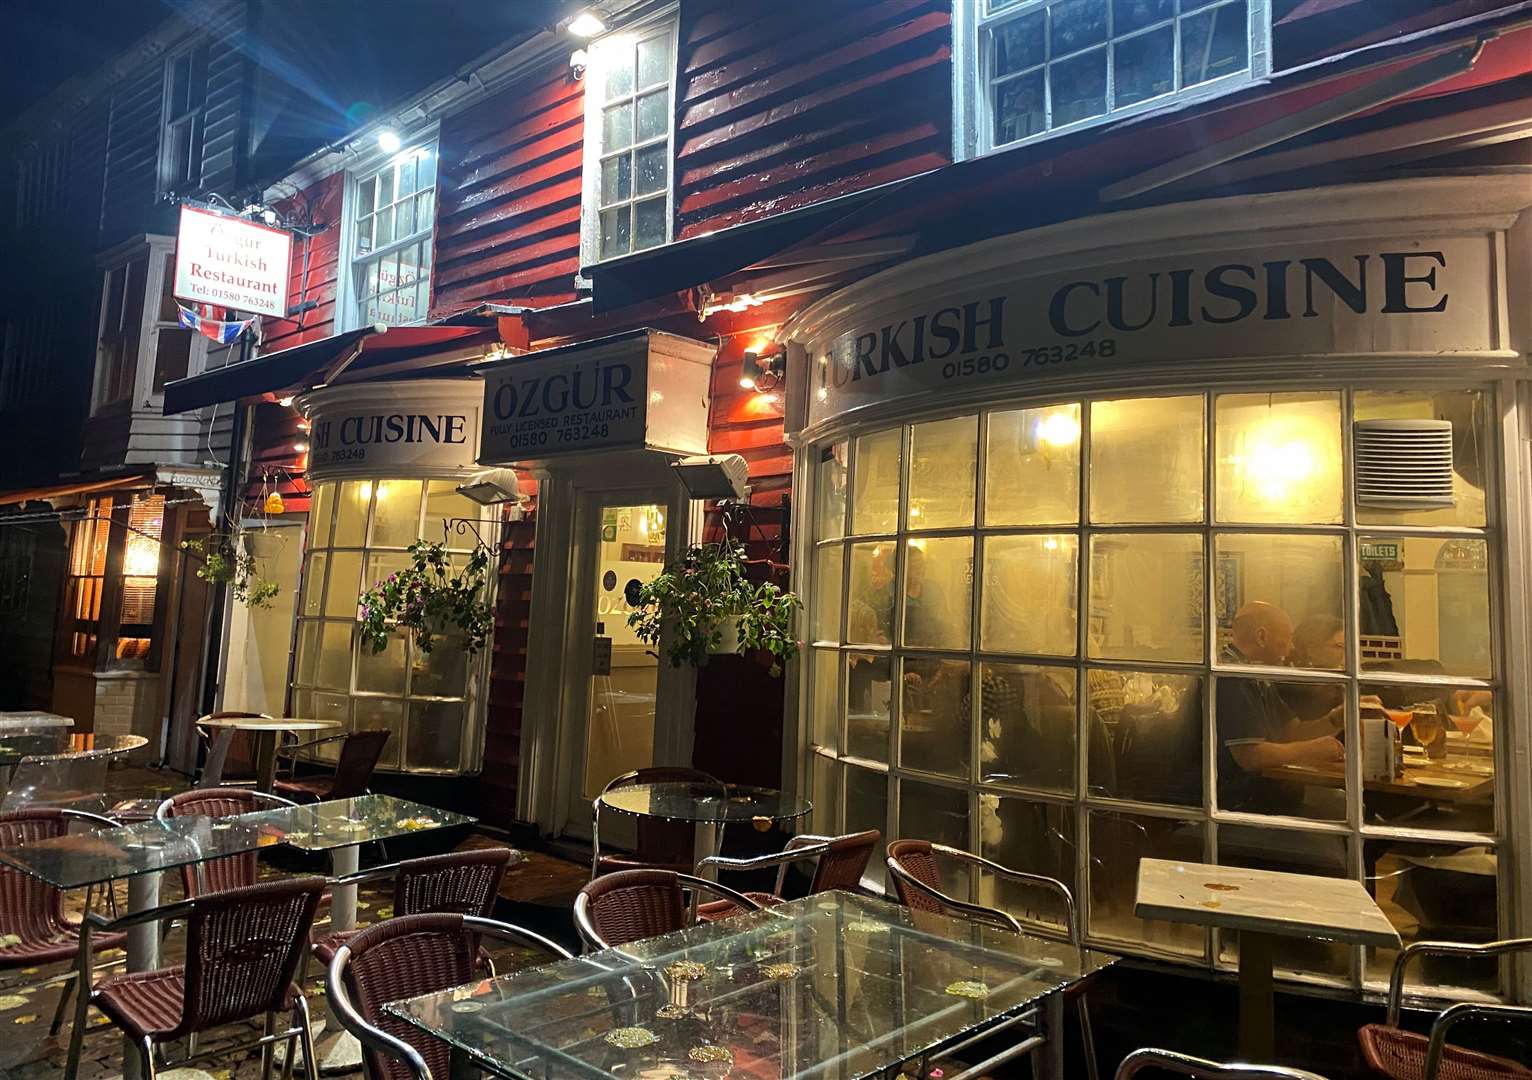 Turkish restaurant Ozgur in Tenterden has been in the town since 1990